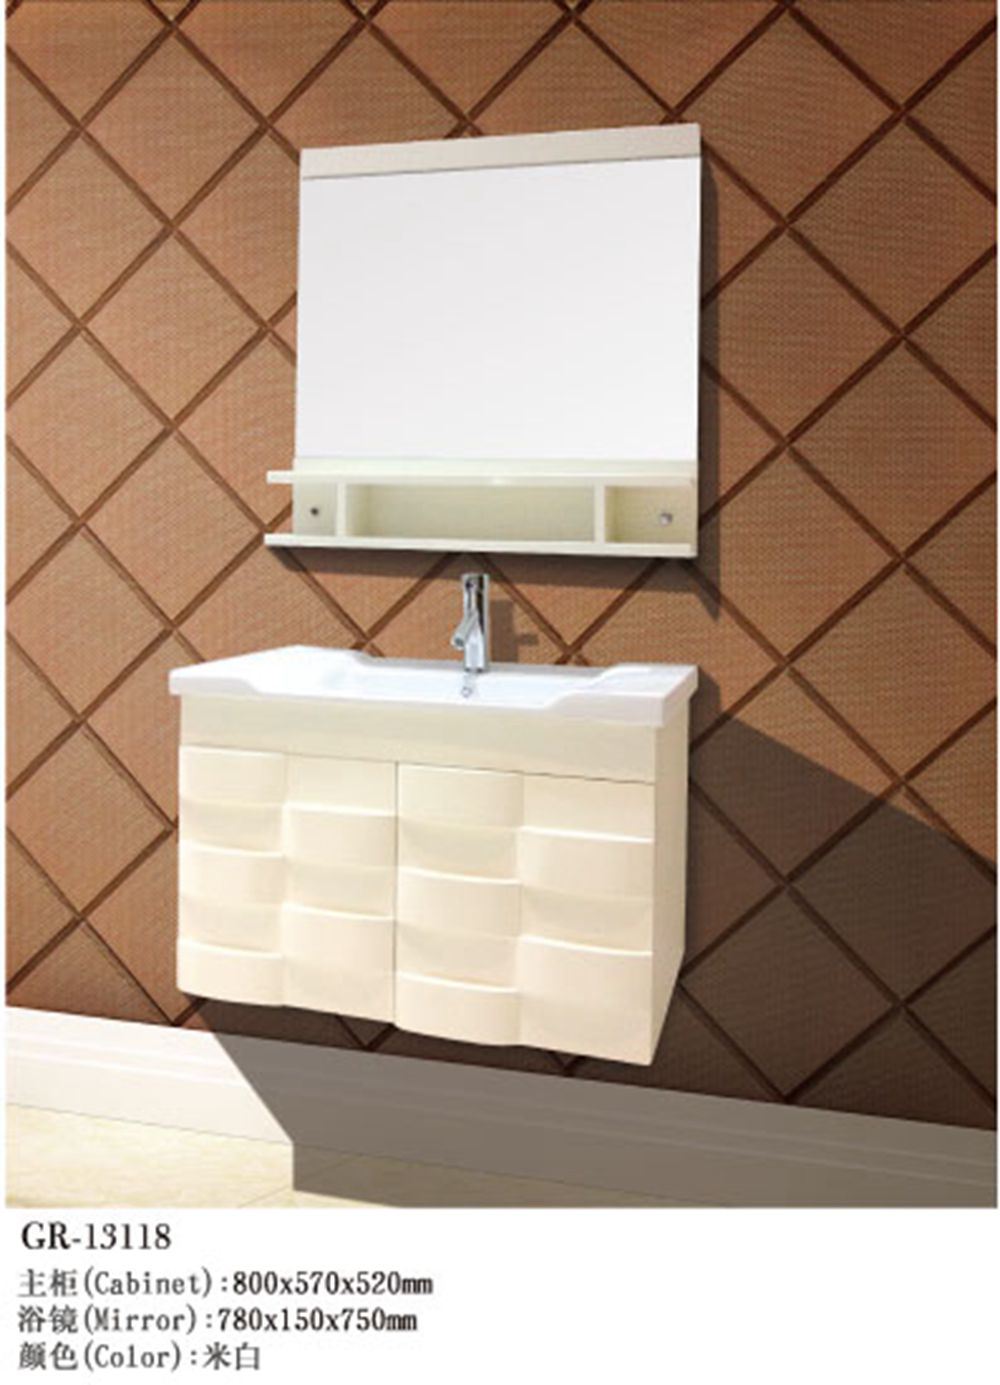 Luxury Wooden Furniture Bath Cabinet (13118)